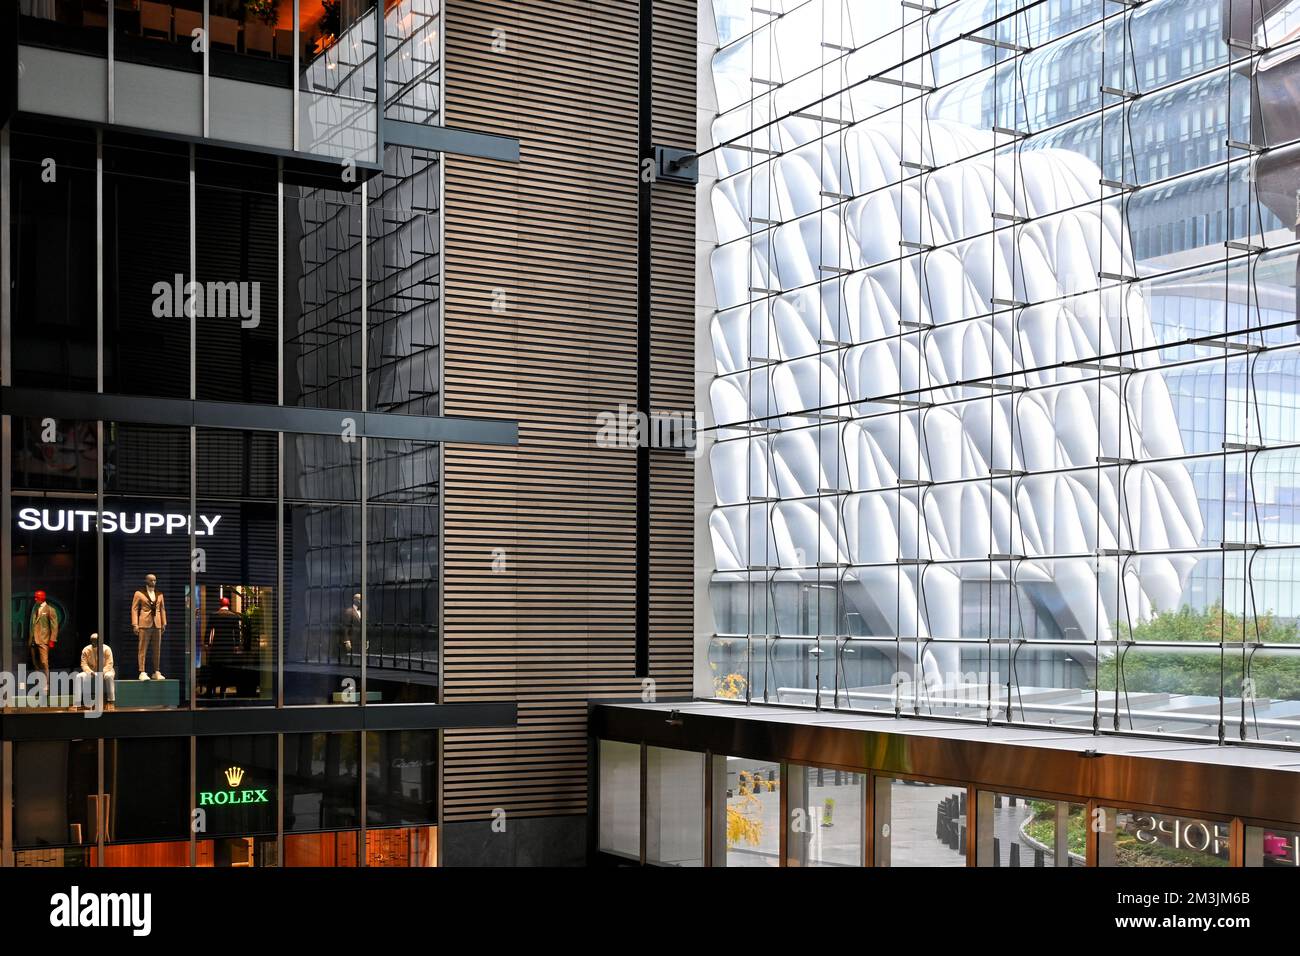 NEW YORK - 24. Okt 2022: Innenbereich der Shops und Restaurants in Hudson Yards, der Schuppen ist durch das Frontfenster sichtbar. Stockfoto